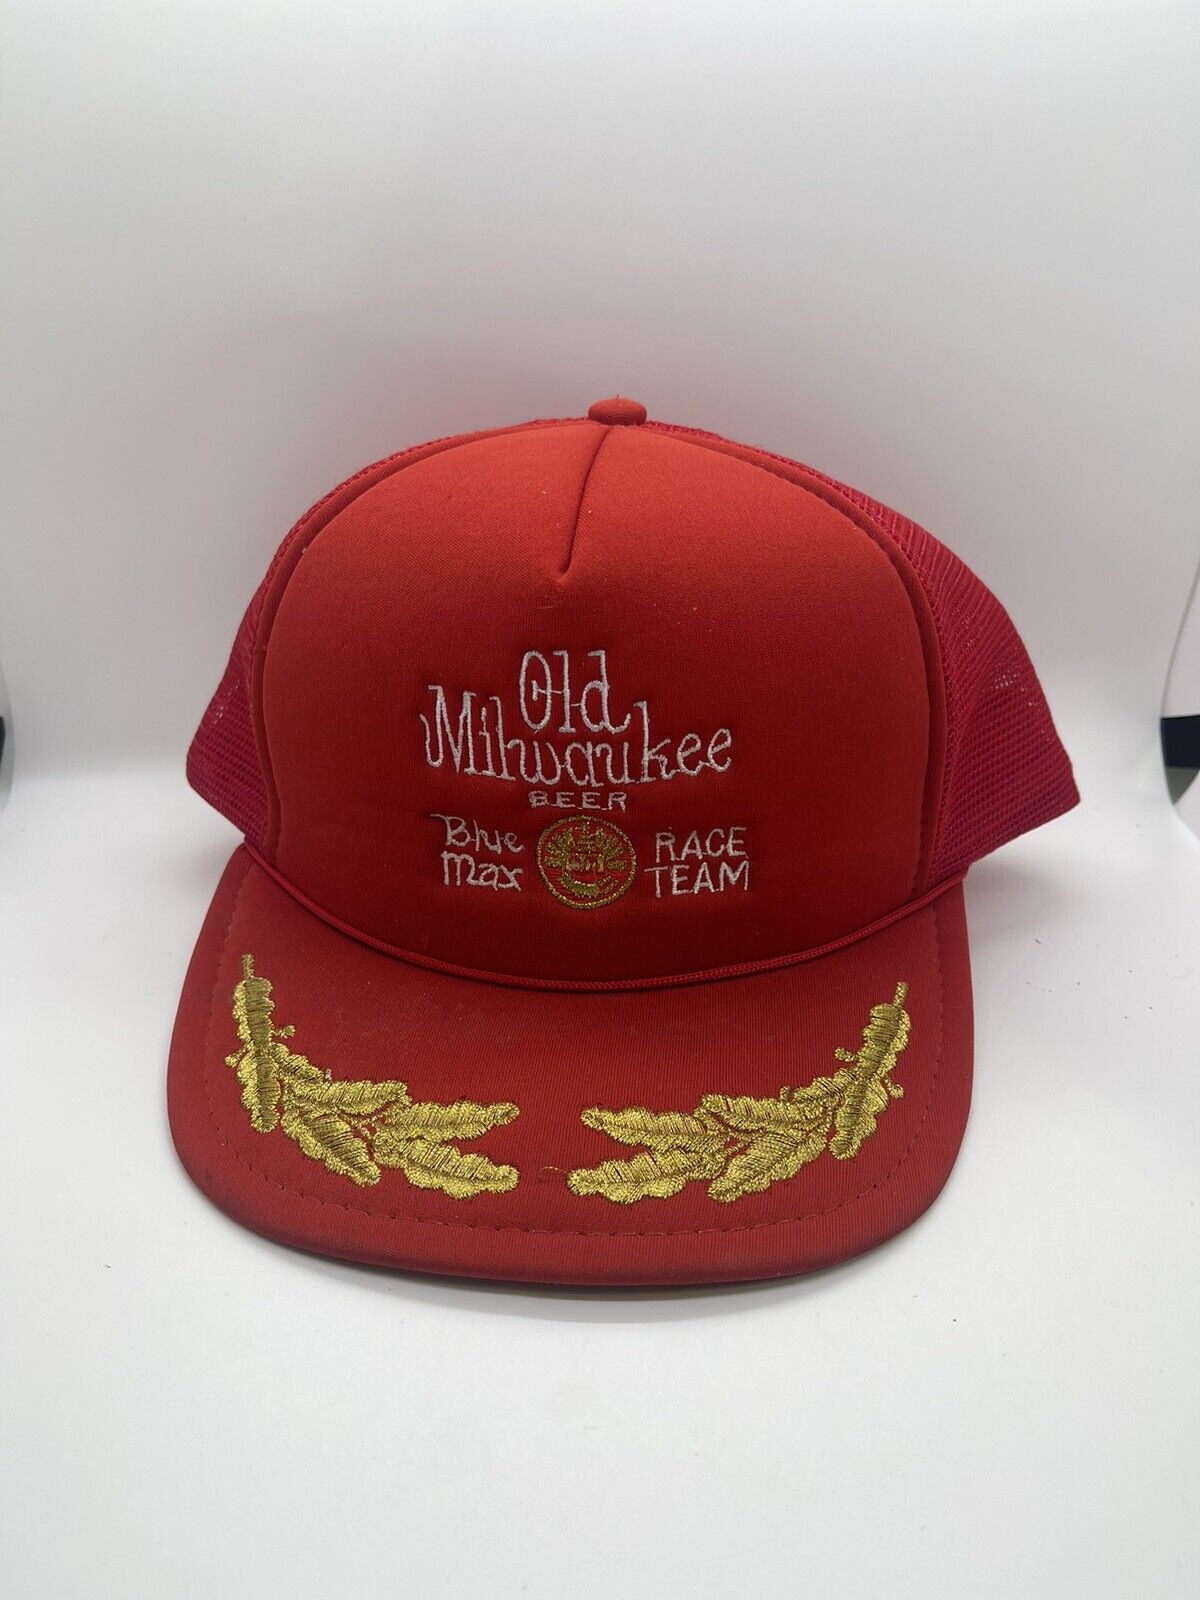 Old Milwaukee Beer Vintage Snapback Red Hat Mesh Back Truckers Baseball Cap